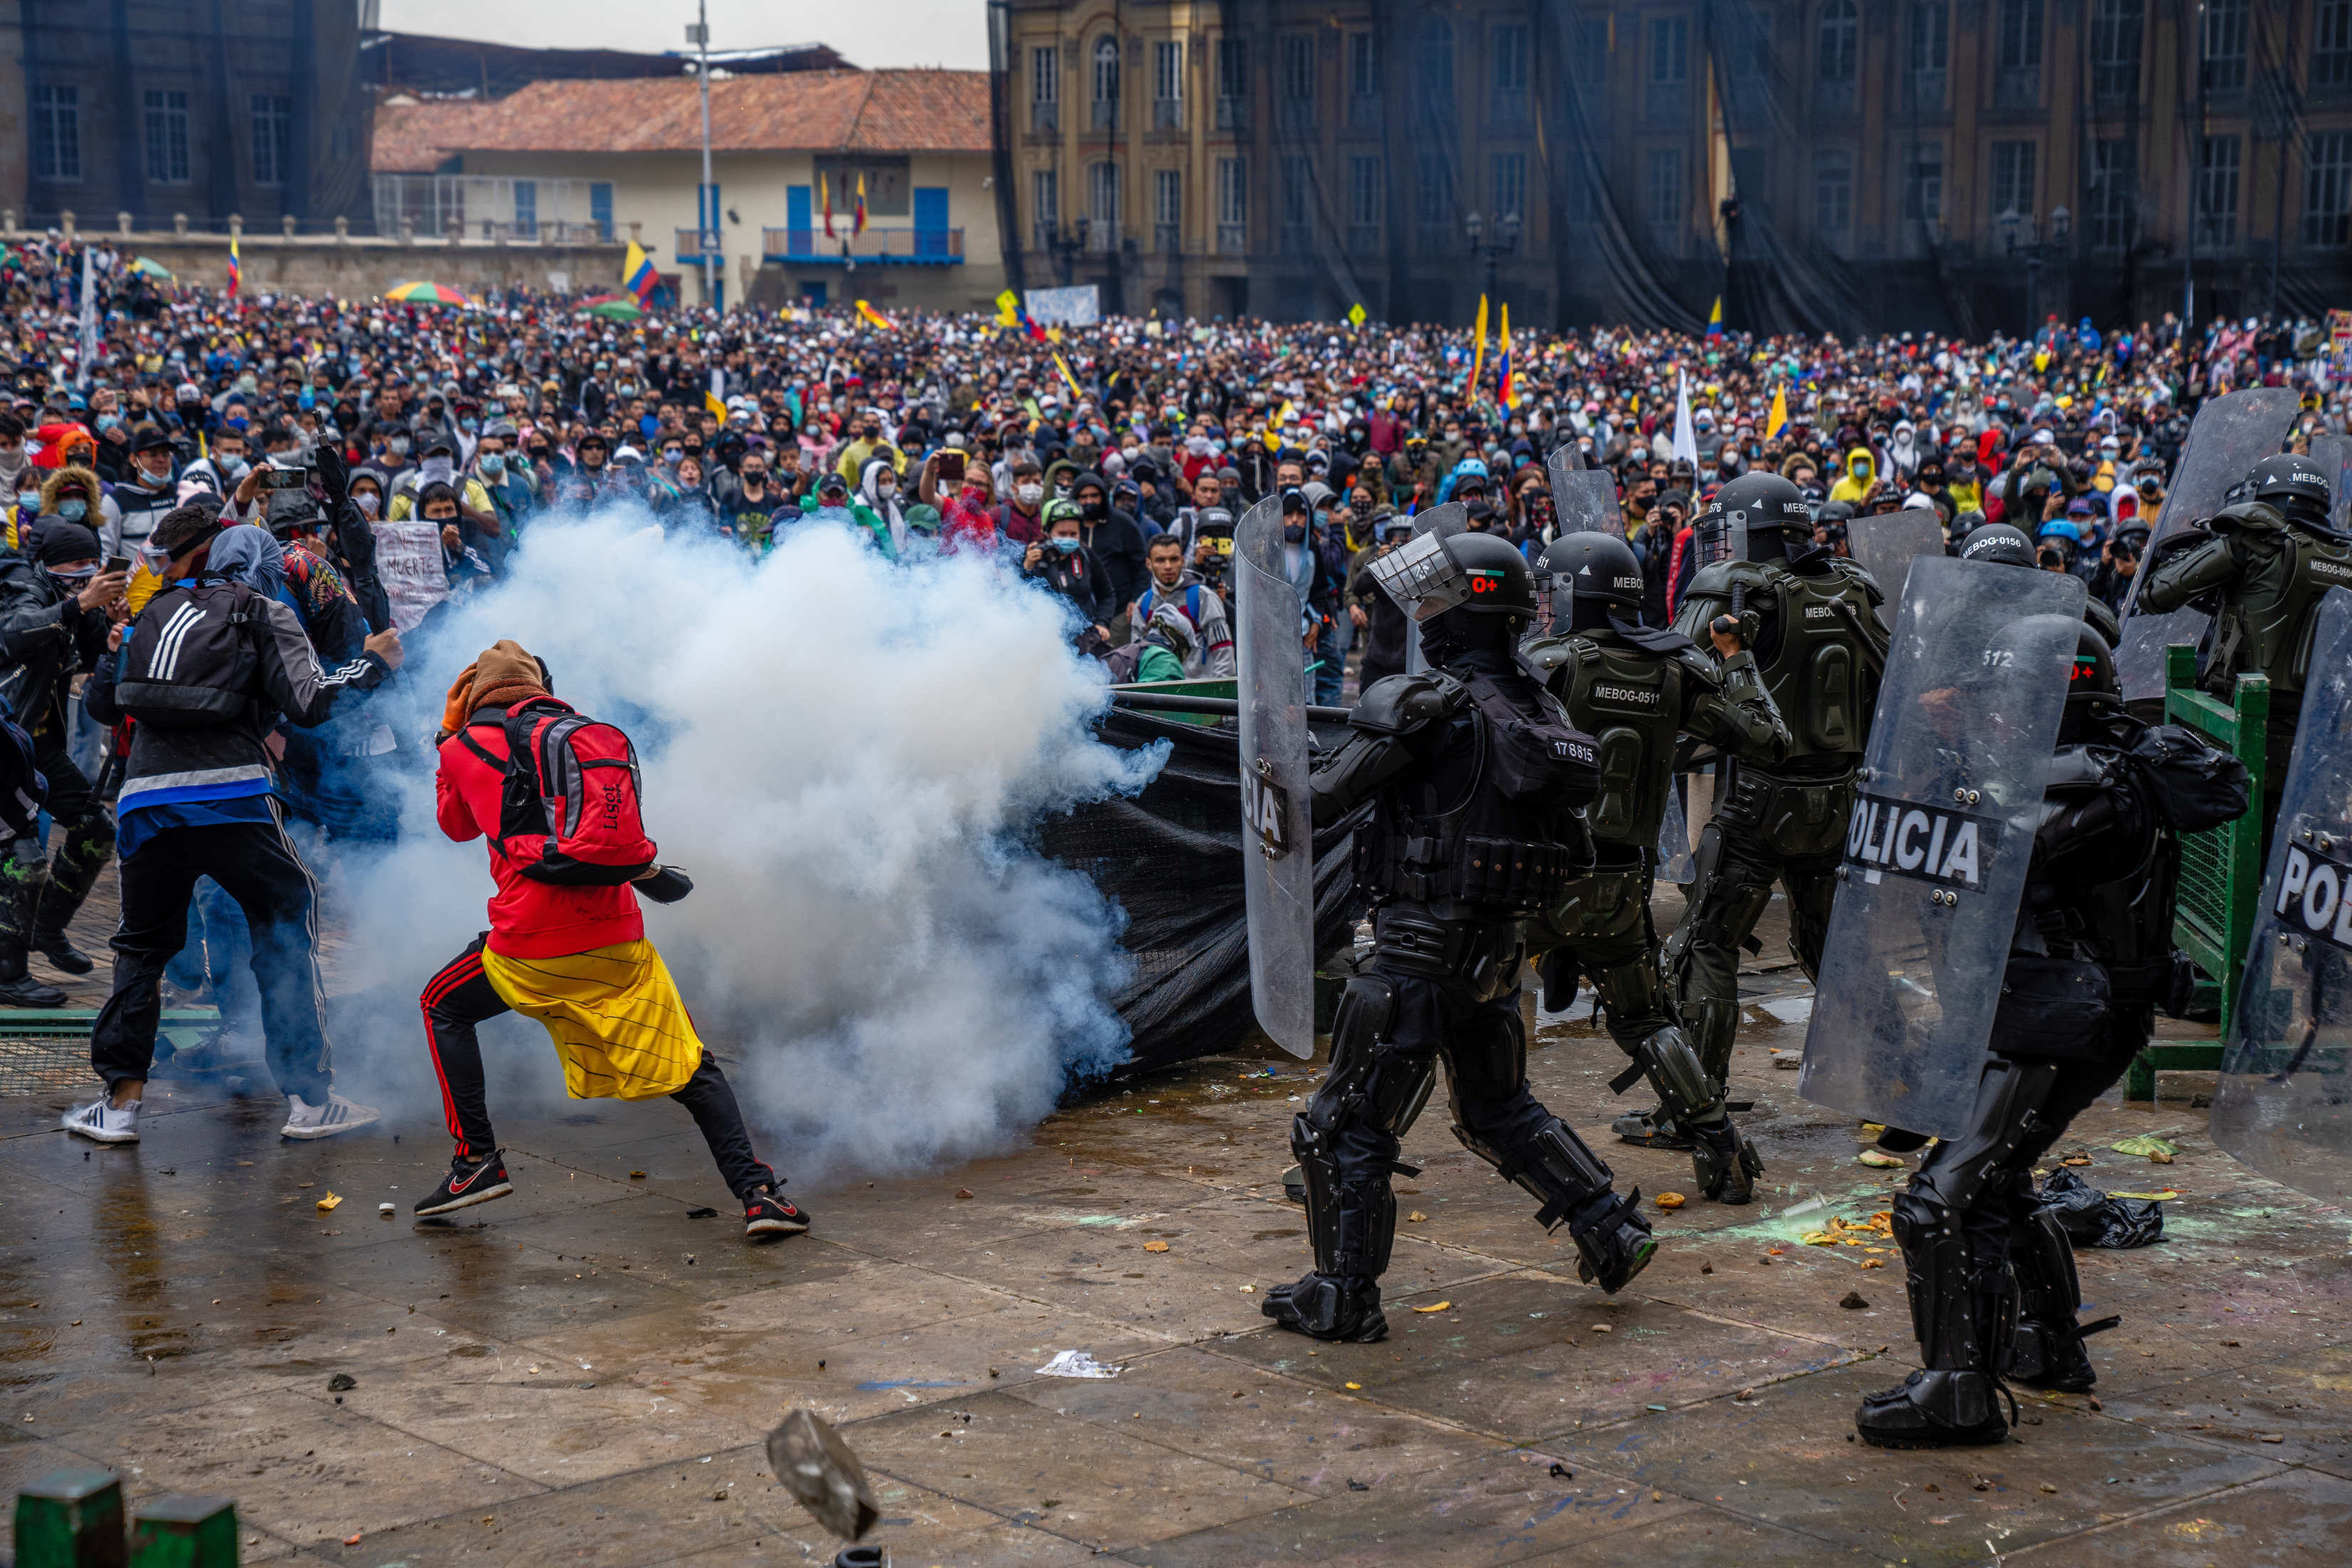 Foto de archivo muestra a Manifestantes y policías con equipo antidisturbios cuando se enfrentan en una manifestación provocada por una propuesta de reforma fiscal en Bogotá, Colombia, el 28 de abril de 2021. (Foto Prensa Libre: Federico Ríos/The New York Times)
